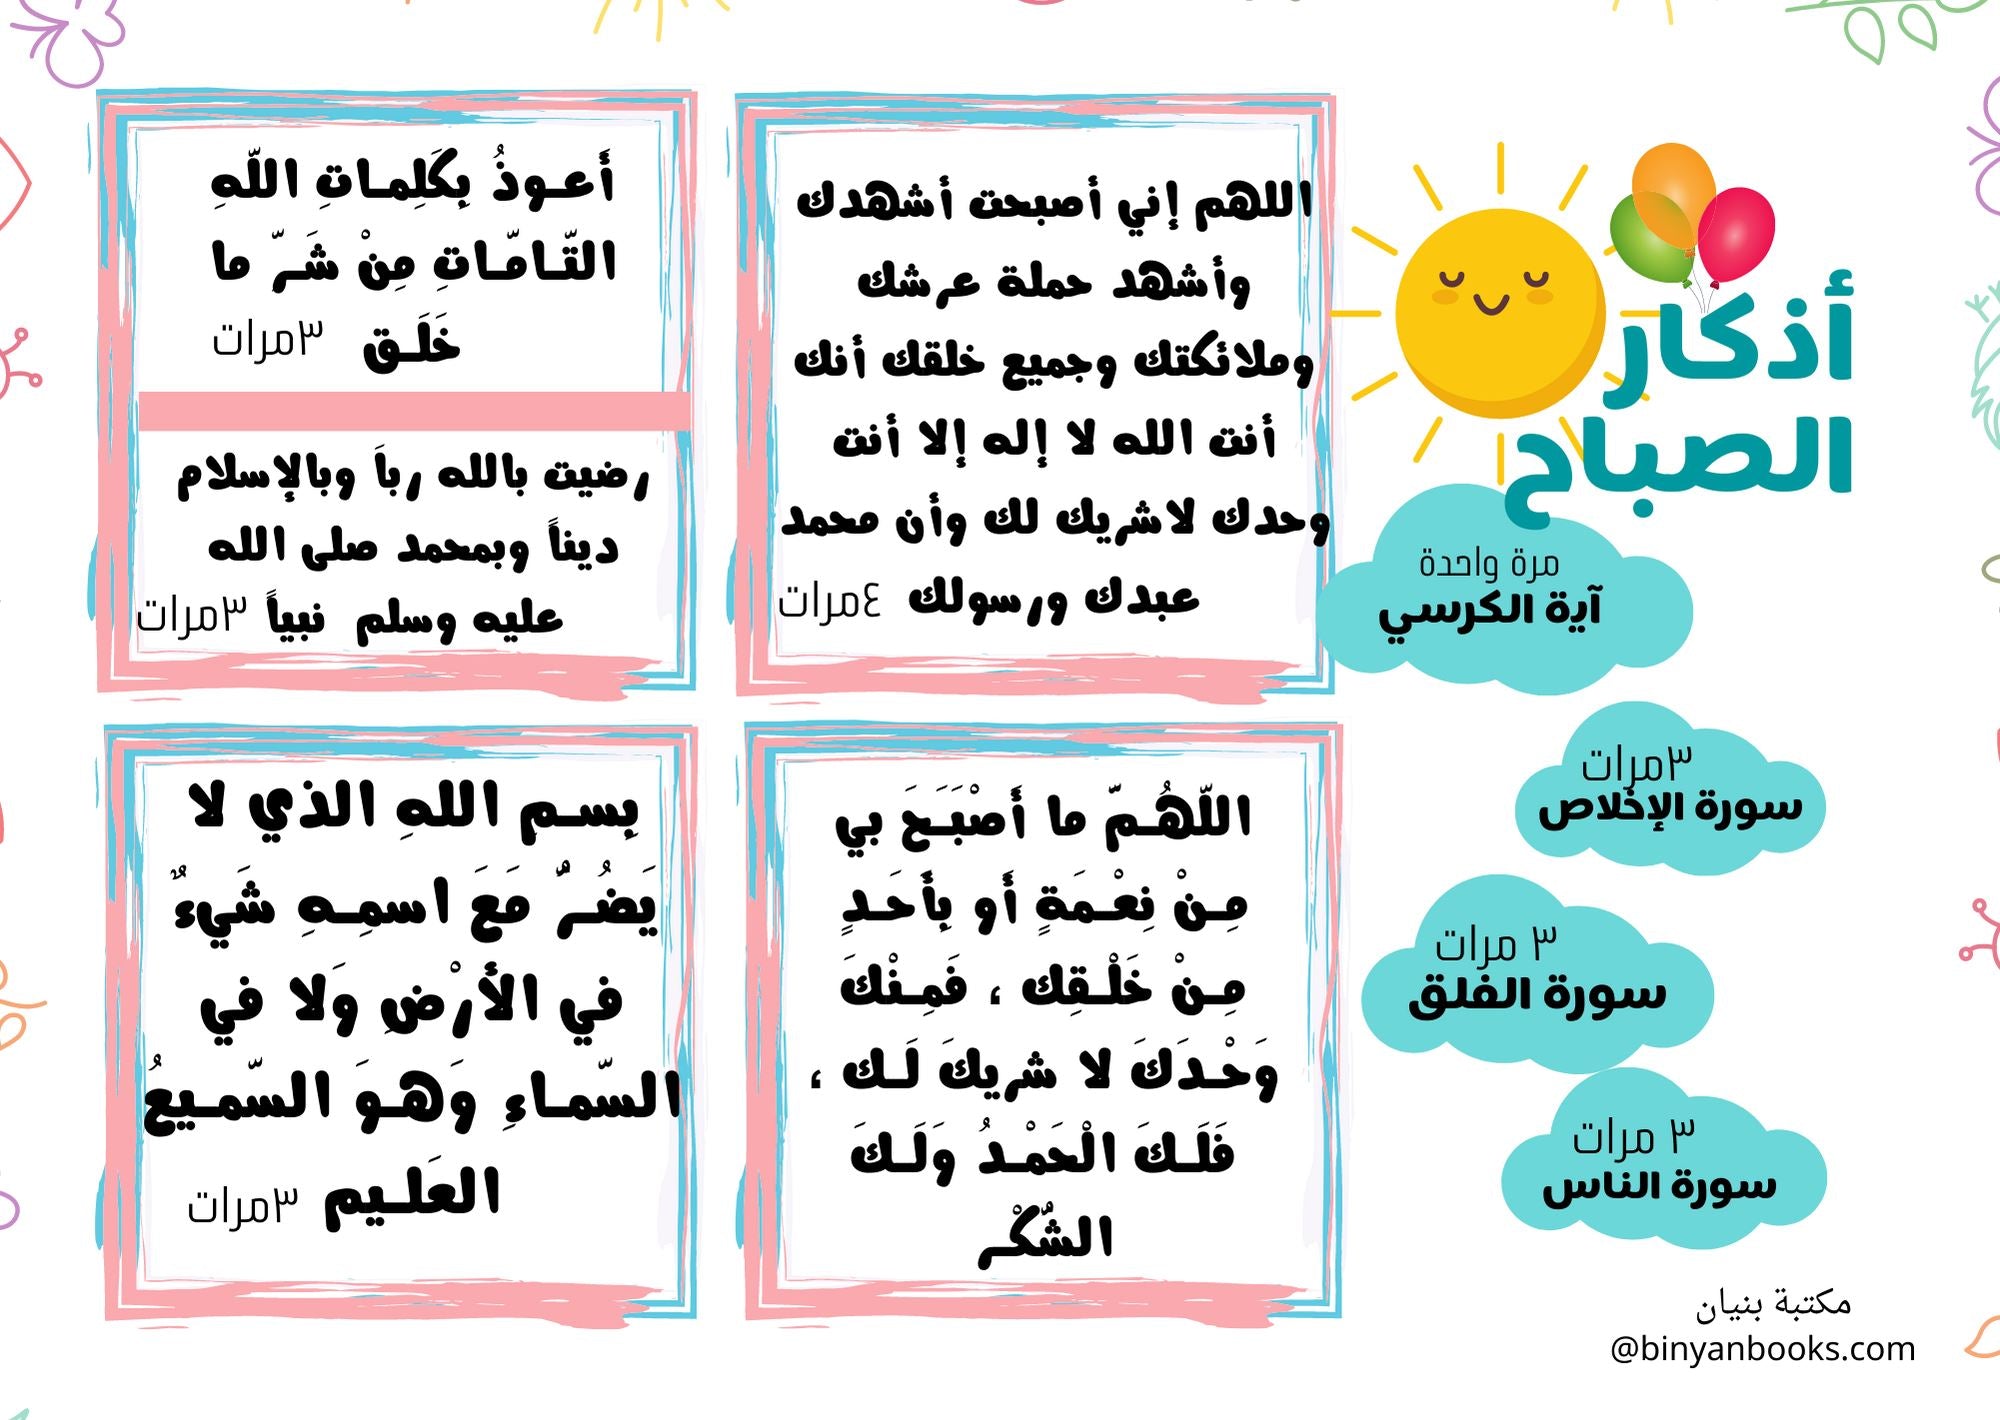 بطاقات الطفل المسلم بتوجيهات نبوية كتب أطفال رزان الحجار